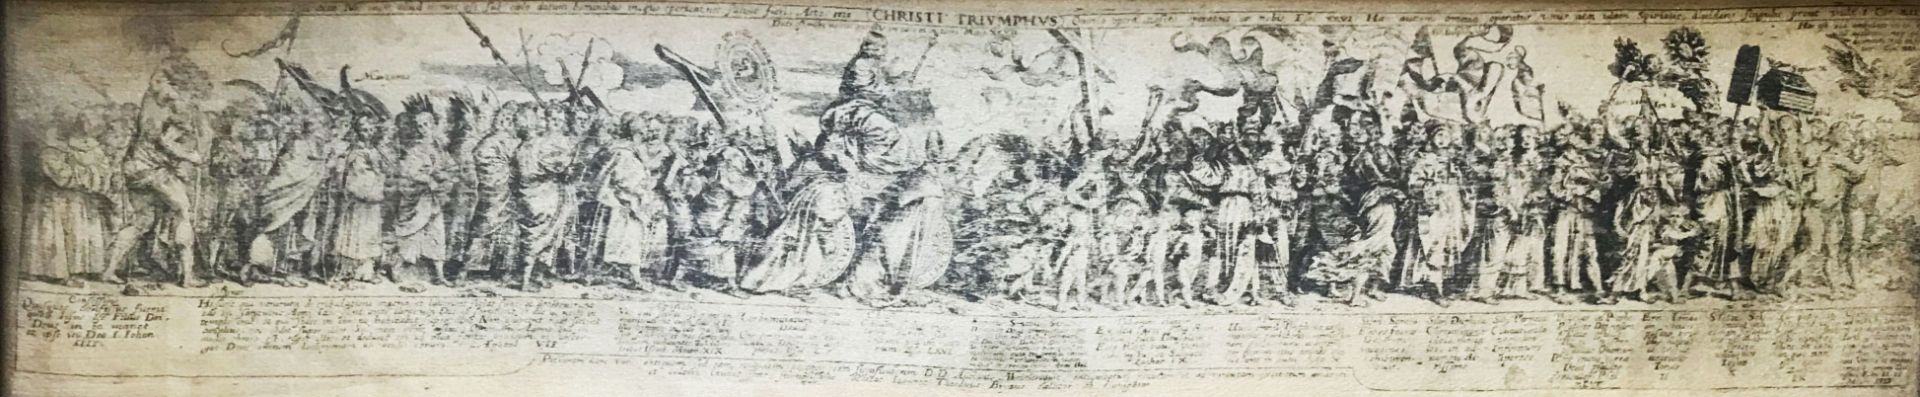 Längliche Graphik, "Christi Triumphus", Kupferstich auf Seide, sehr feine Ausführung, schriftliche